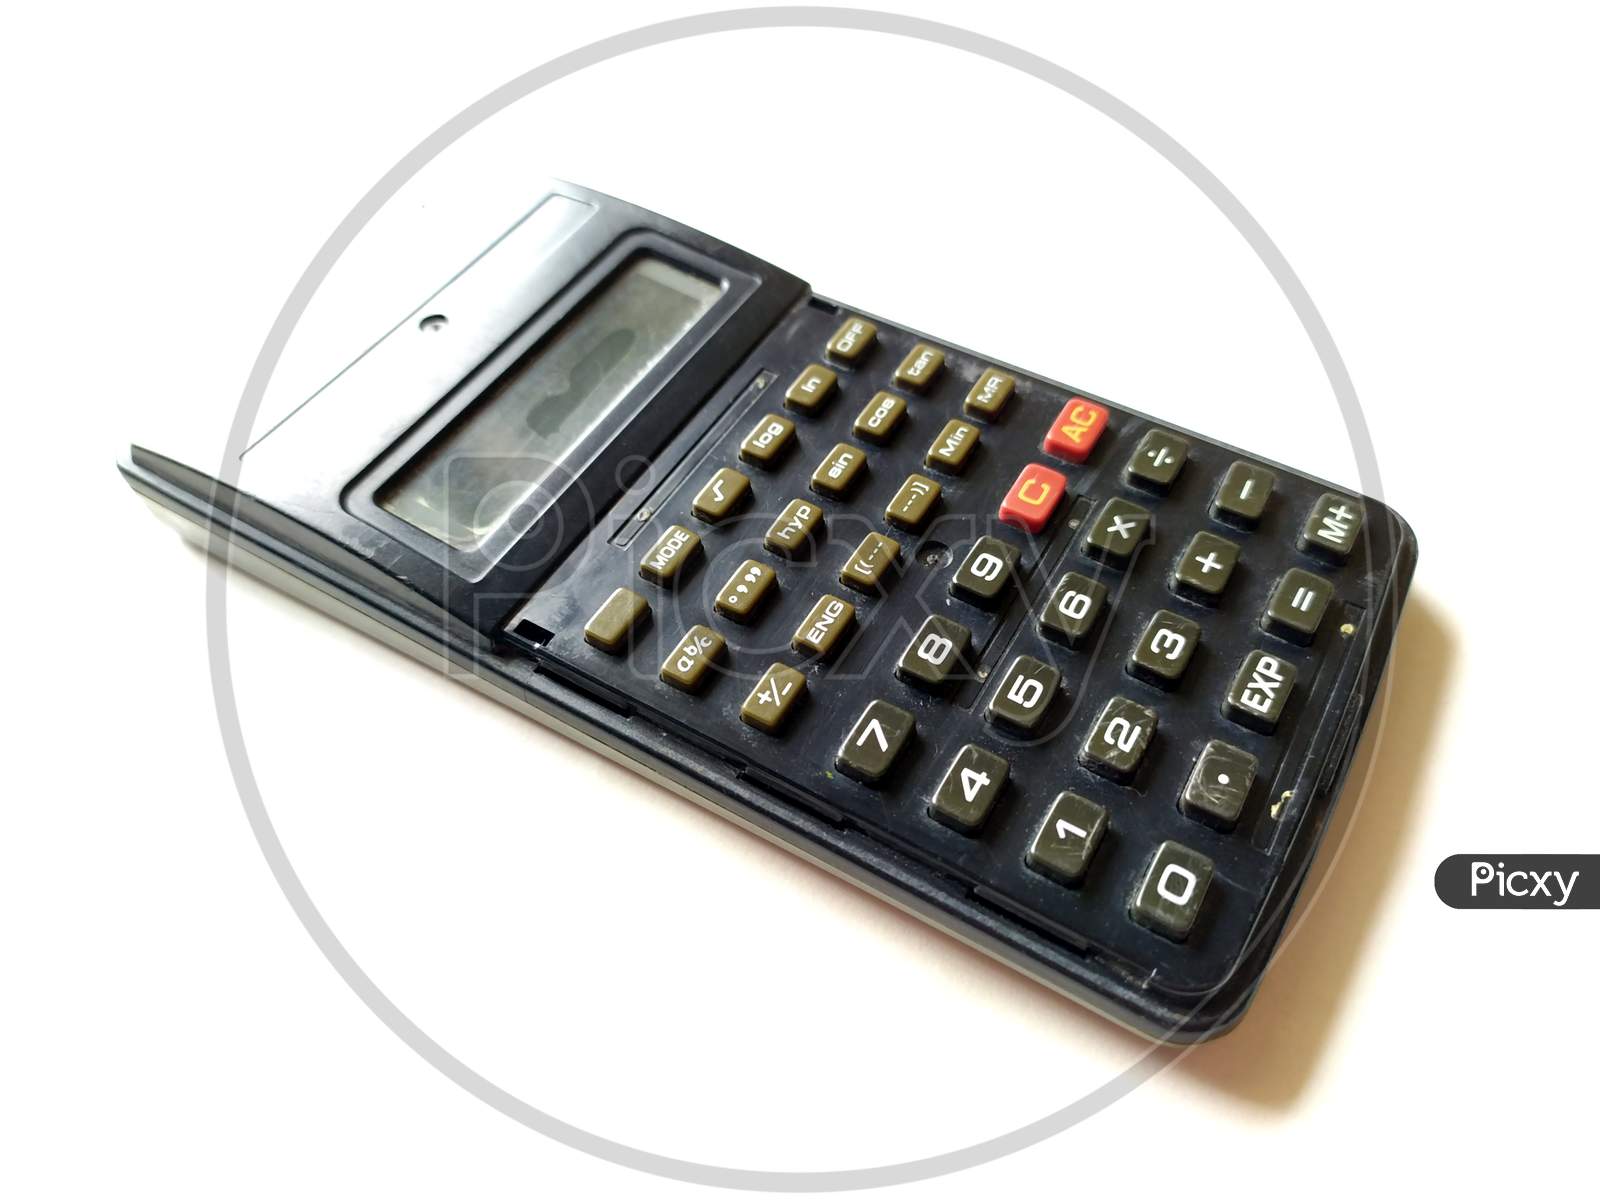 Scientific Calculator Images - Free Download on Freepik